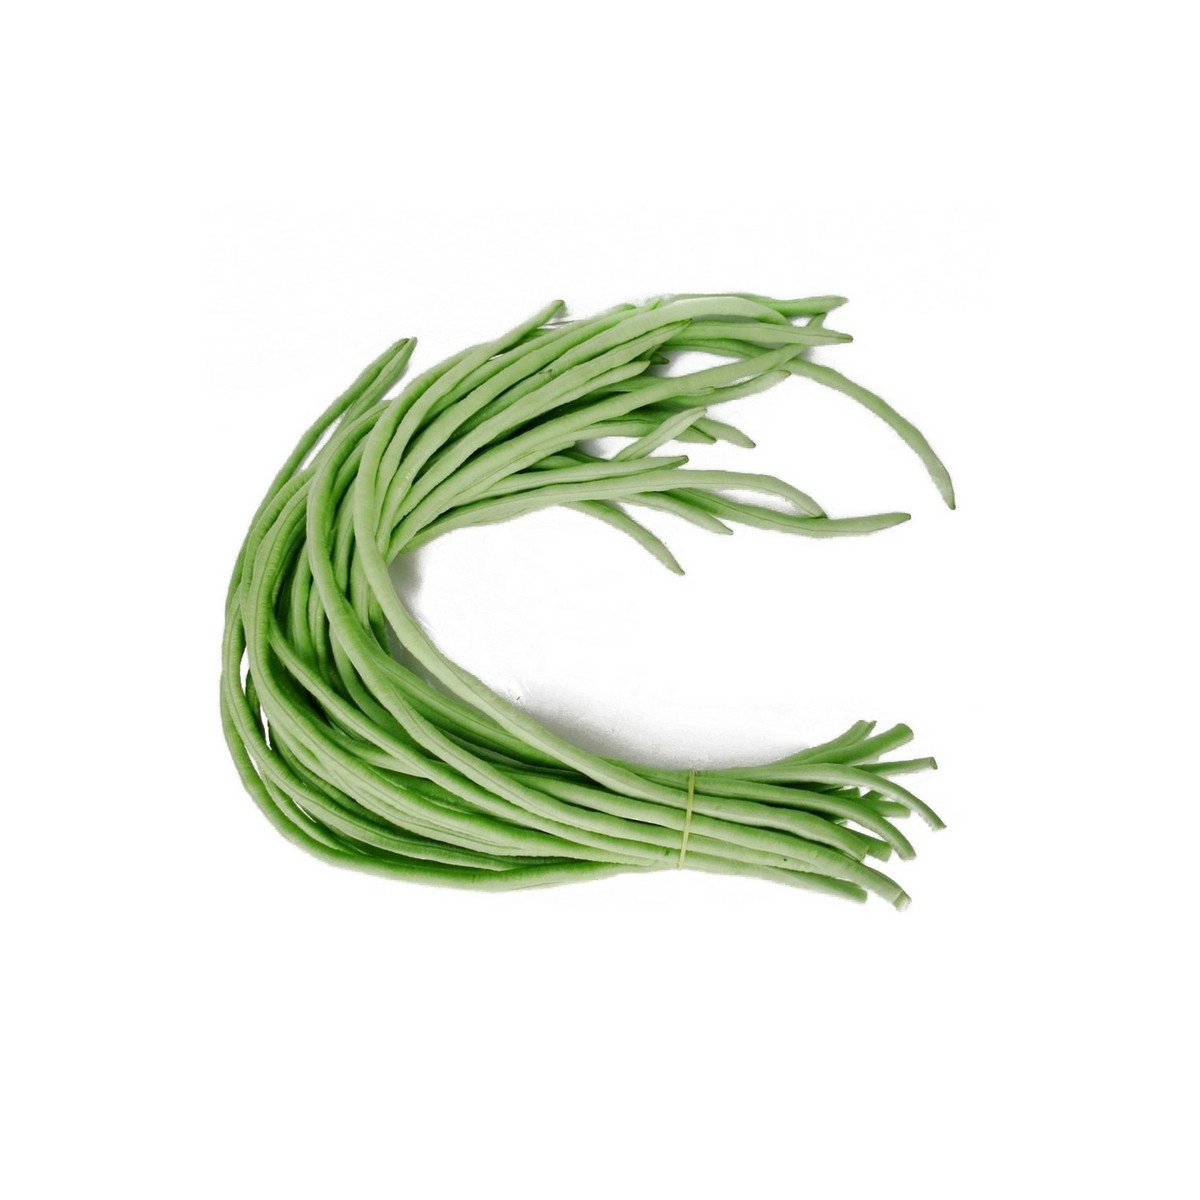 اشتري قم بشراء فاصوليا 500 جم Online at Best Price من الموقع - من لولو هايبر ماركت Green Vegetables في السعودية